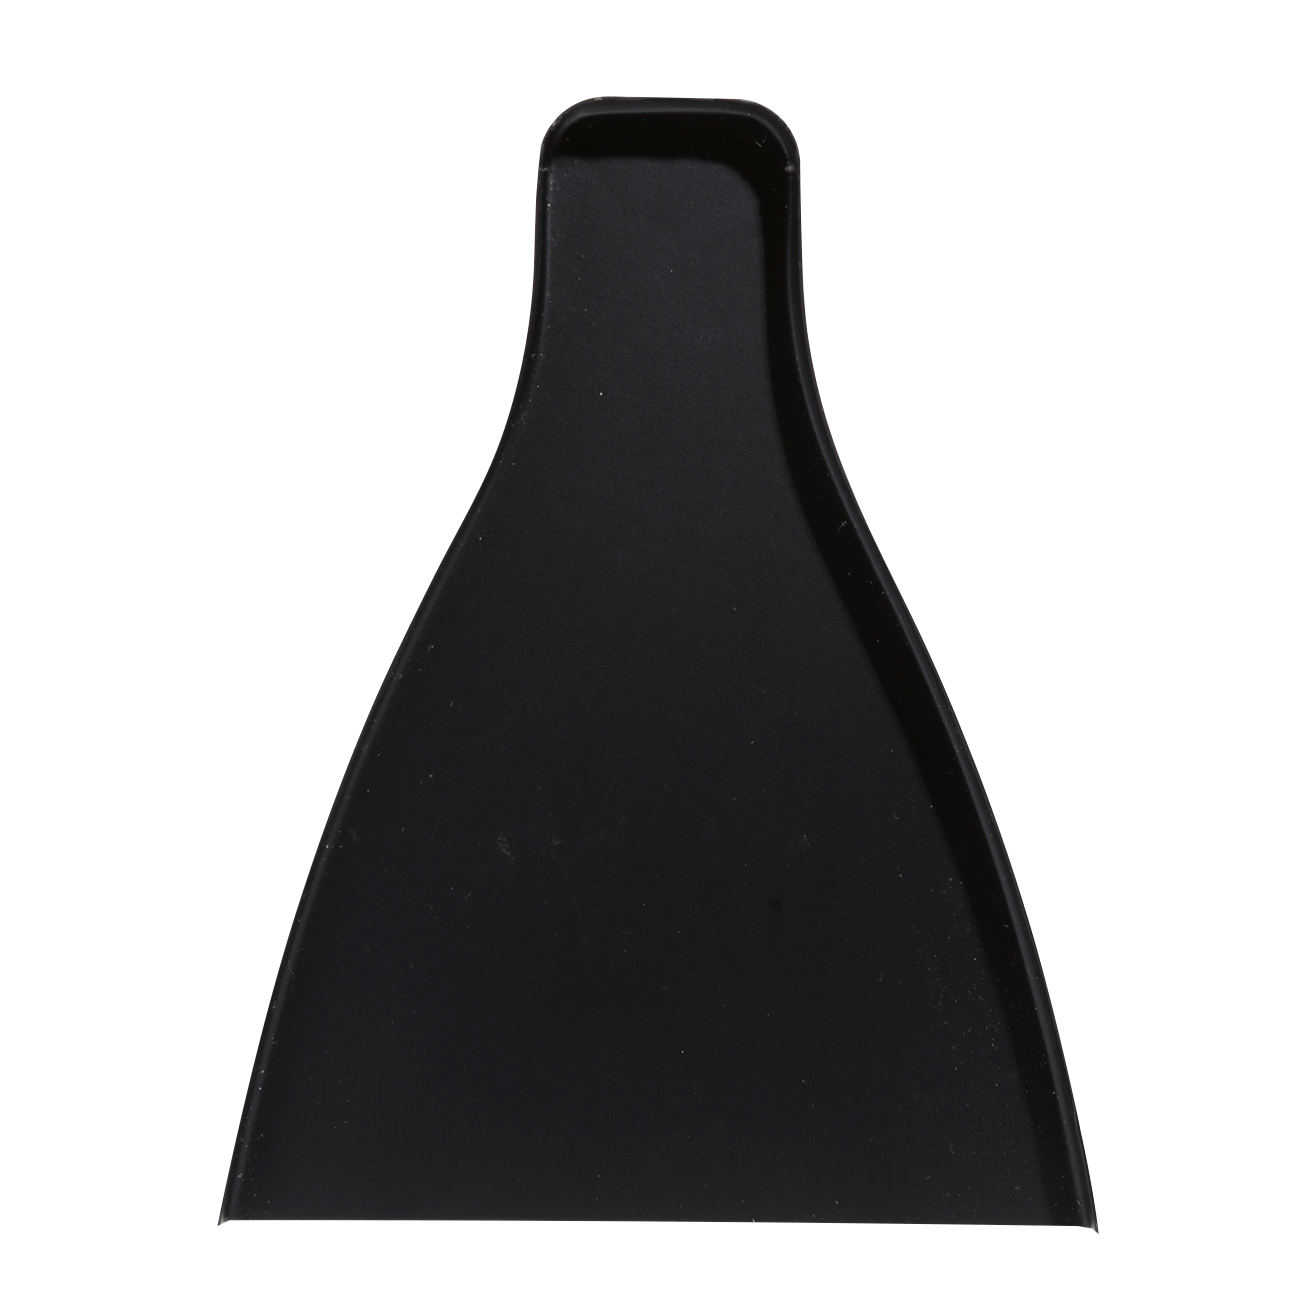 Щетка для мусора, с совком, 17 см, пластик/бамбук/сталь, черная, Black clean изображение № 3